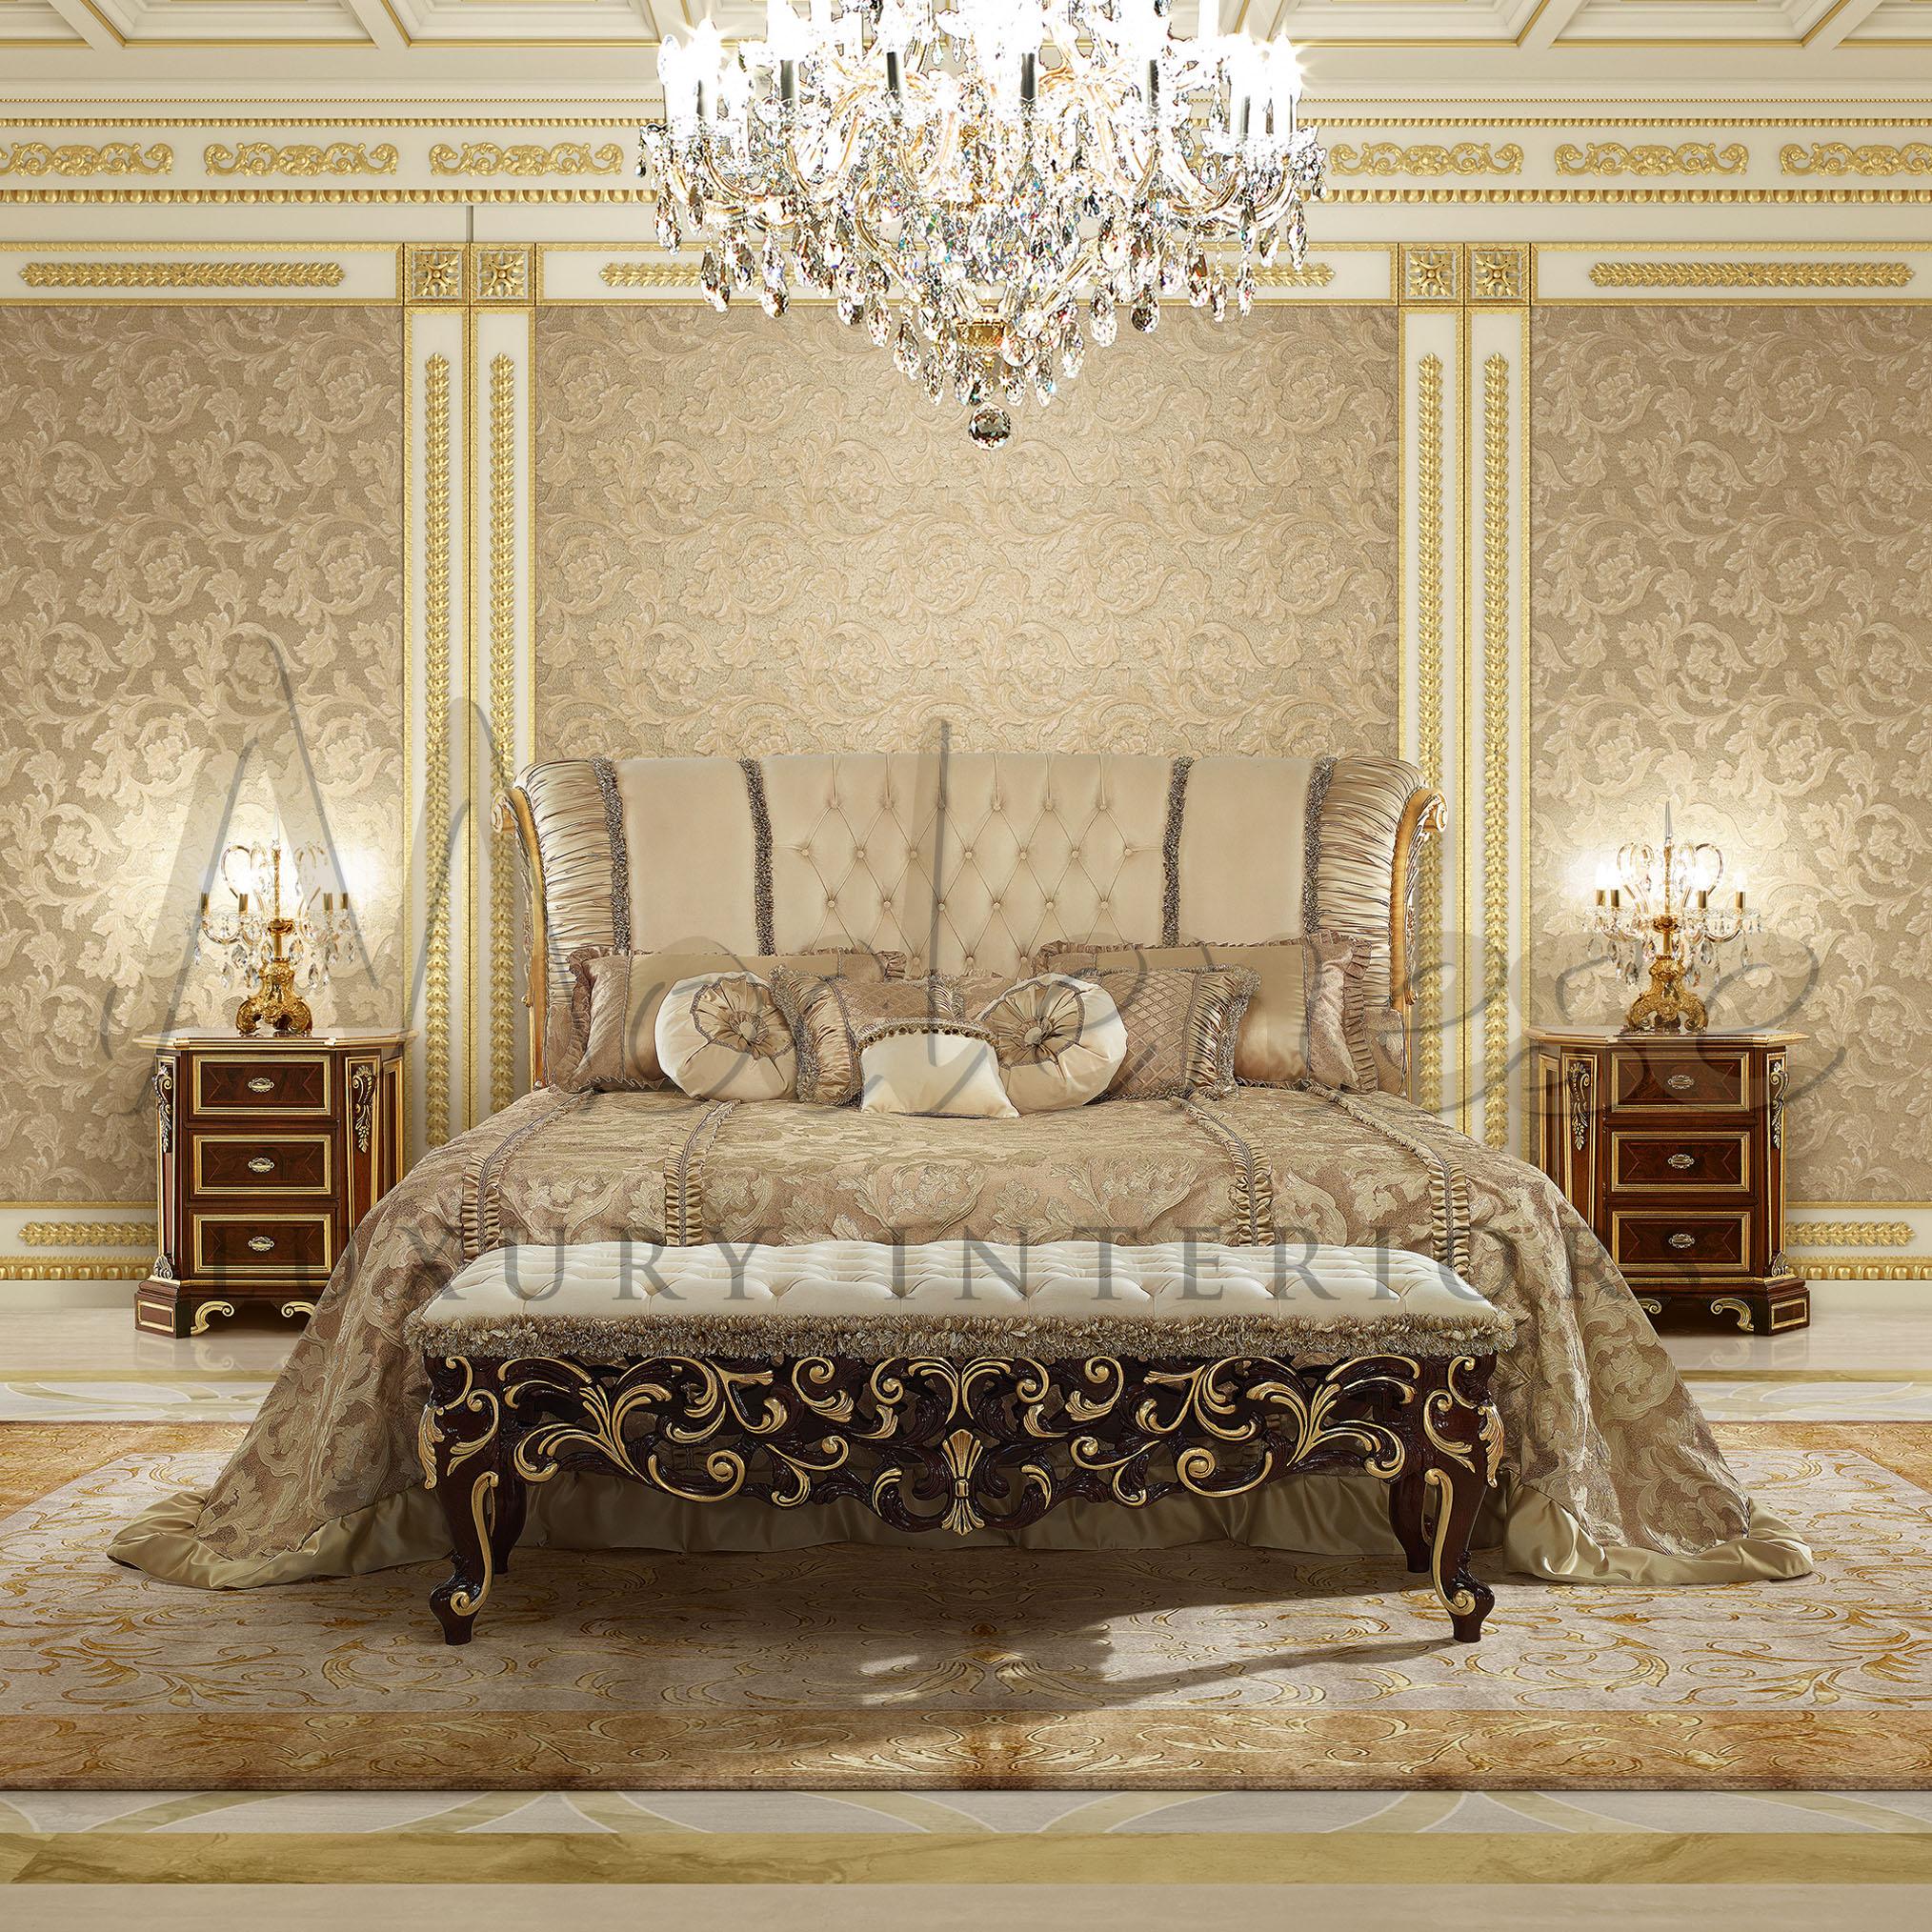 Bien plus qu'une simple solution de chambre à coucher, ce lit double rembourré néo-rococo de Modenese Gastone Interiors vous donnera l'impression d'être une reine avec son roi. De larges espaces, un revêtement en cuir touffeté et une tête de lit